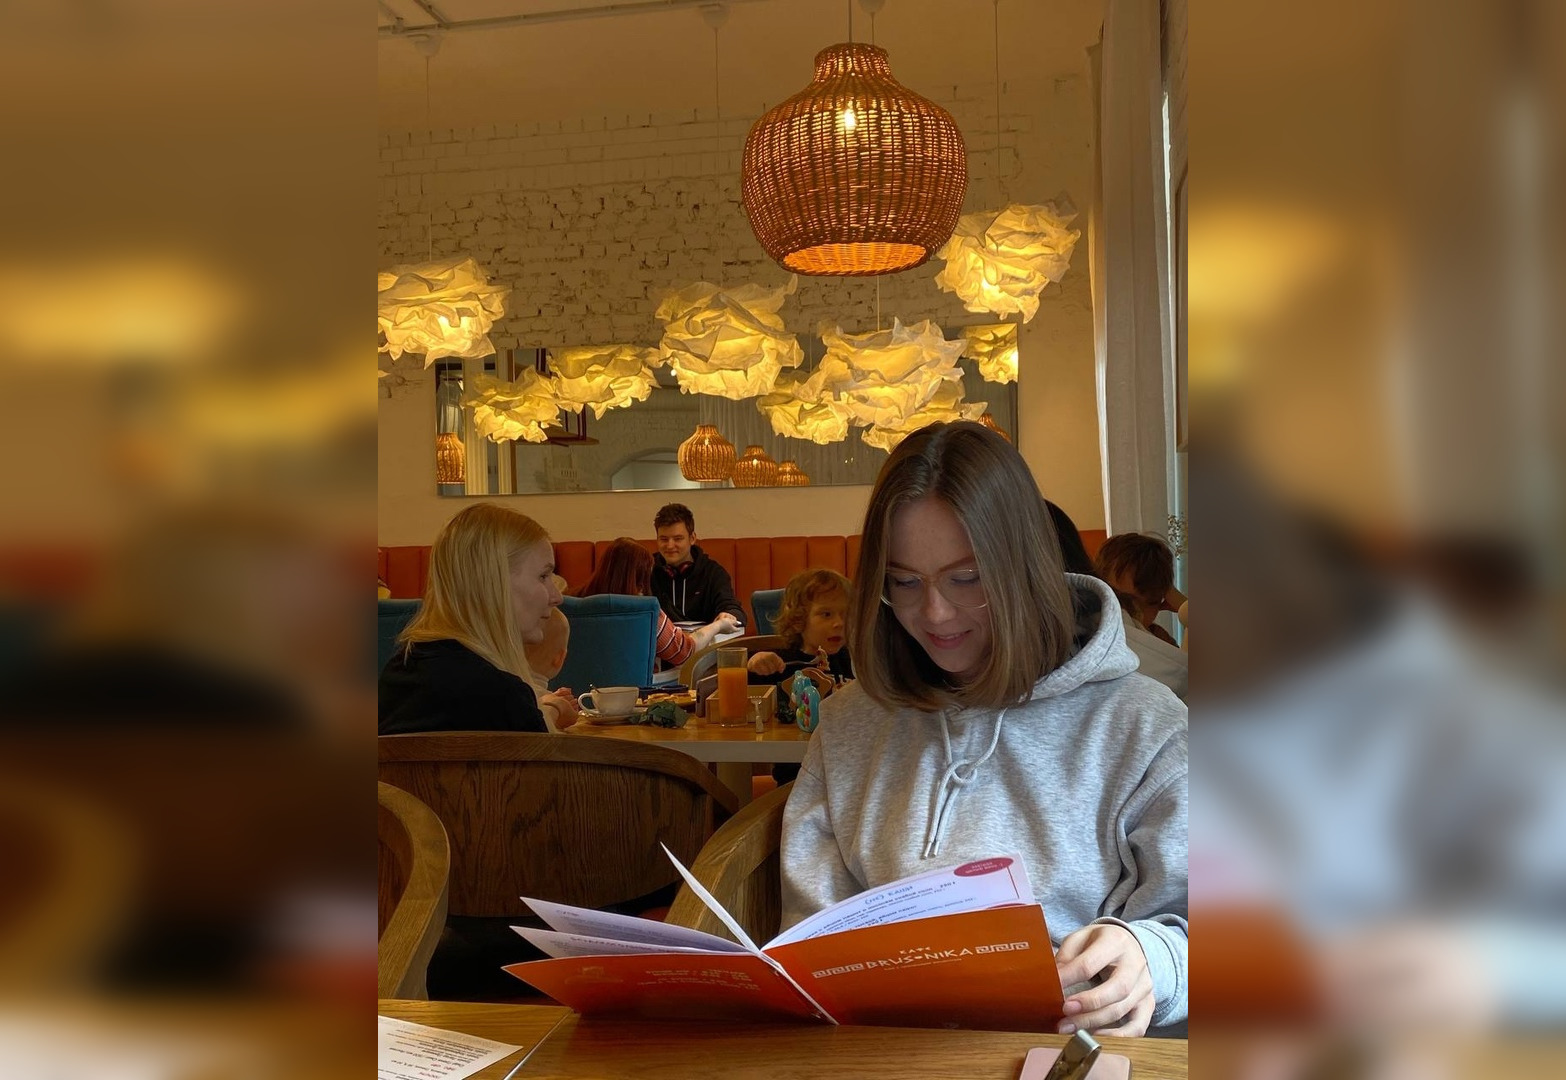 "В Кирове много жадных мужиков": женщины о том, должен ли спутник платить в кафе за даму